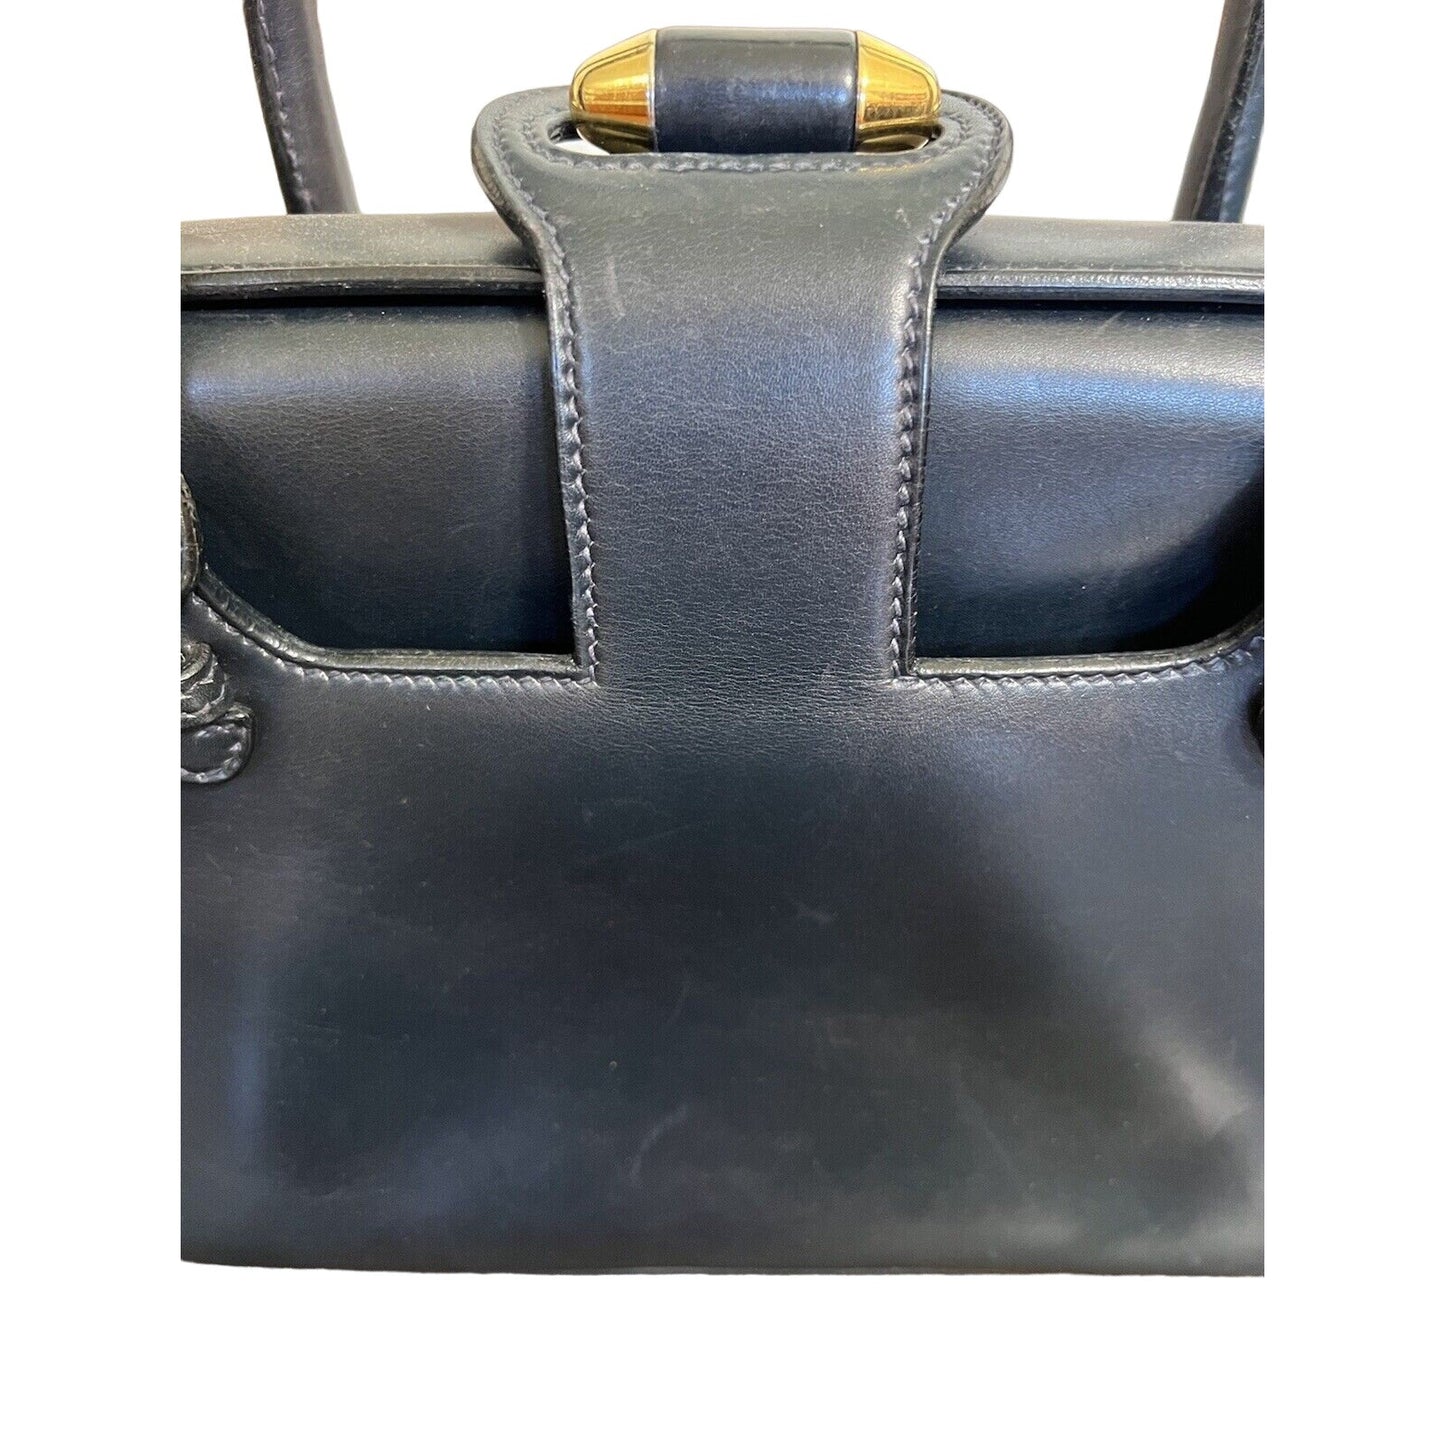 Gucci, navy leather shoulder bag satchel